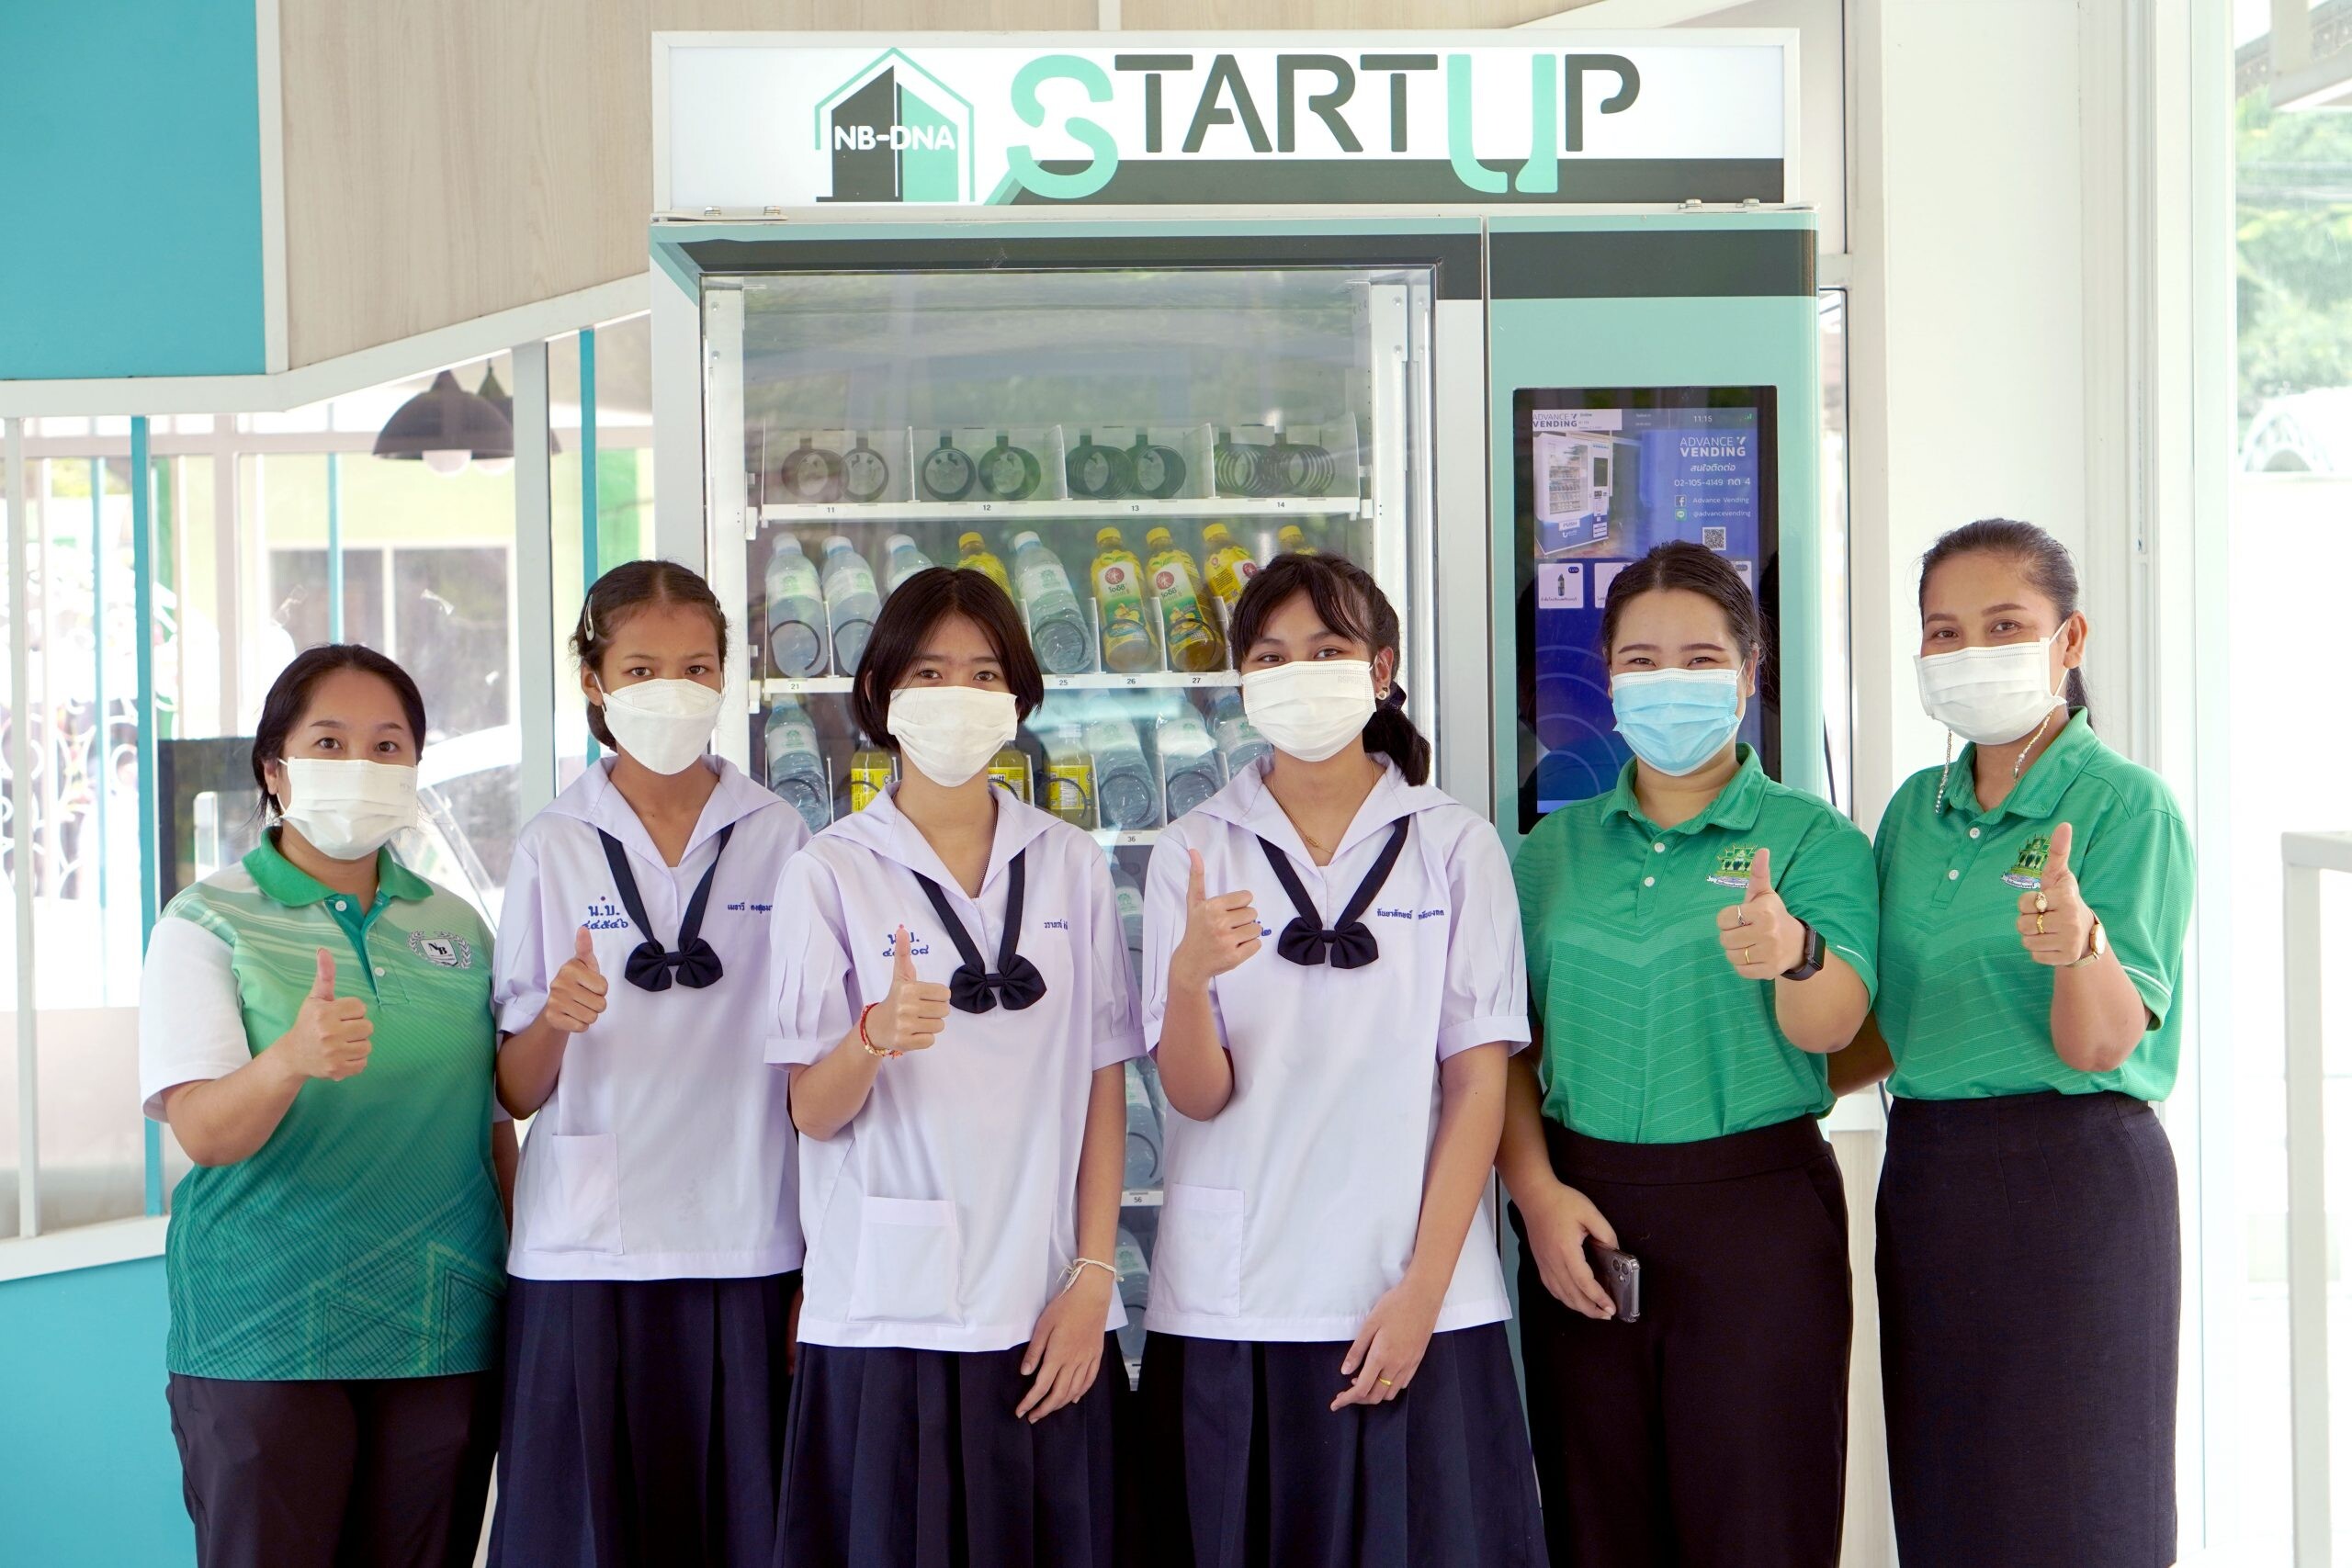 สตรีนนทบุรีผุดไอเดียเจ๋ง ปั้น "โครงการ NB-DNA START UP" ทำจริง สอนจริง สร้าง Startup เสริมกำลังขับเคลื่อนเศรษฐกิจไทย